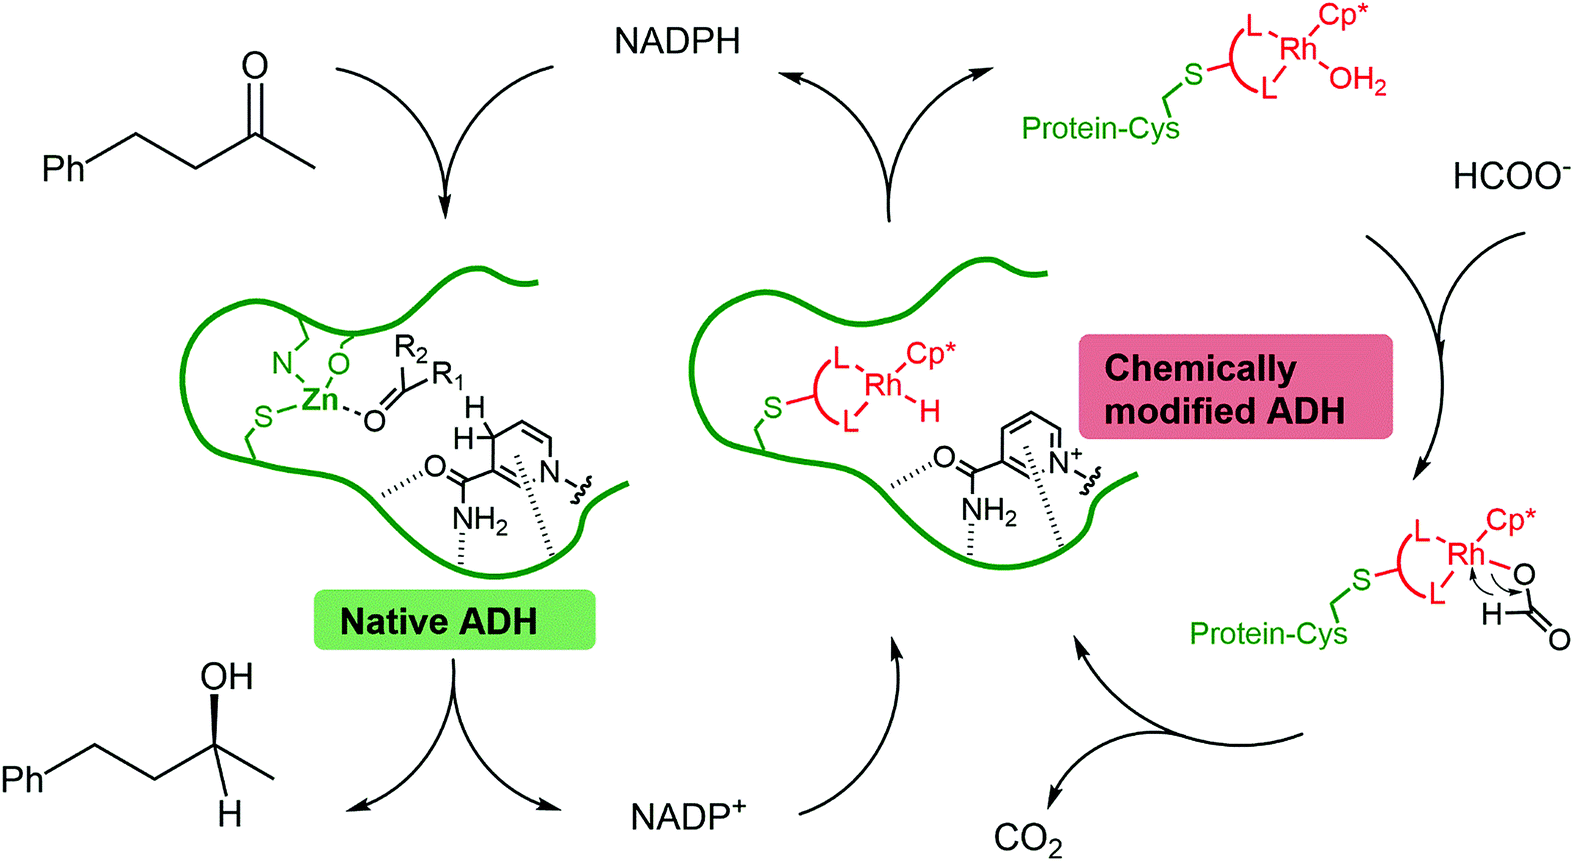 通过两个相互连接的循环合成手性醇：野生型酶（天然ADH）使用NADPH作为还原剂将酮还原为醇。利用含有铑活性位点（化学修饰的ADH）的突变酶，以甲酸为末端还原剂，对NADPH进行再生。醇脱氢酶